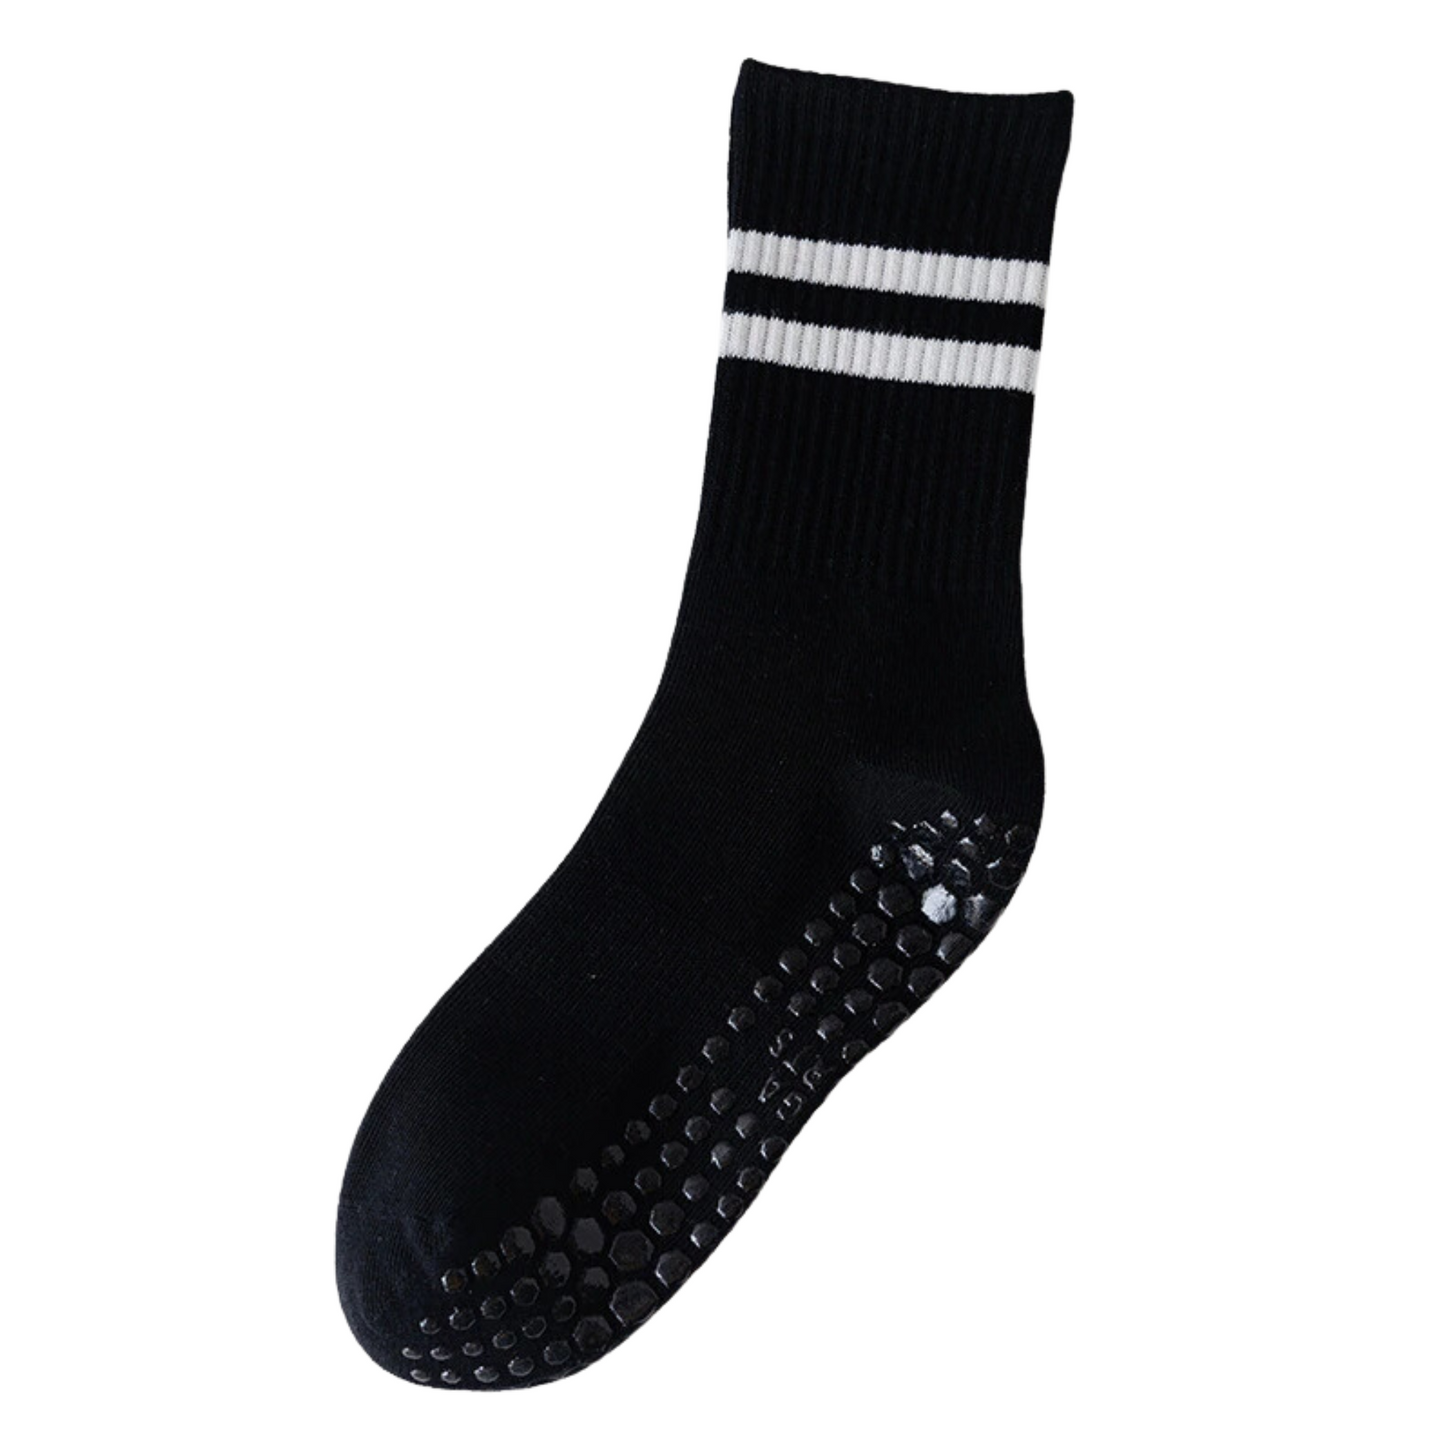 Non Slip Socks - Bettacare Mobility